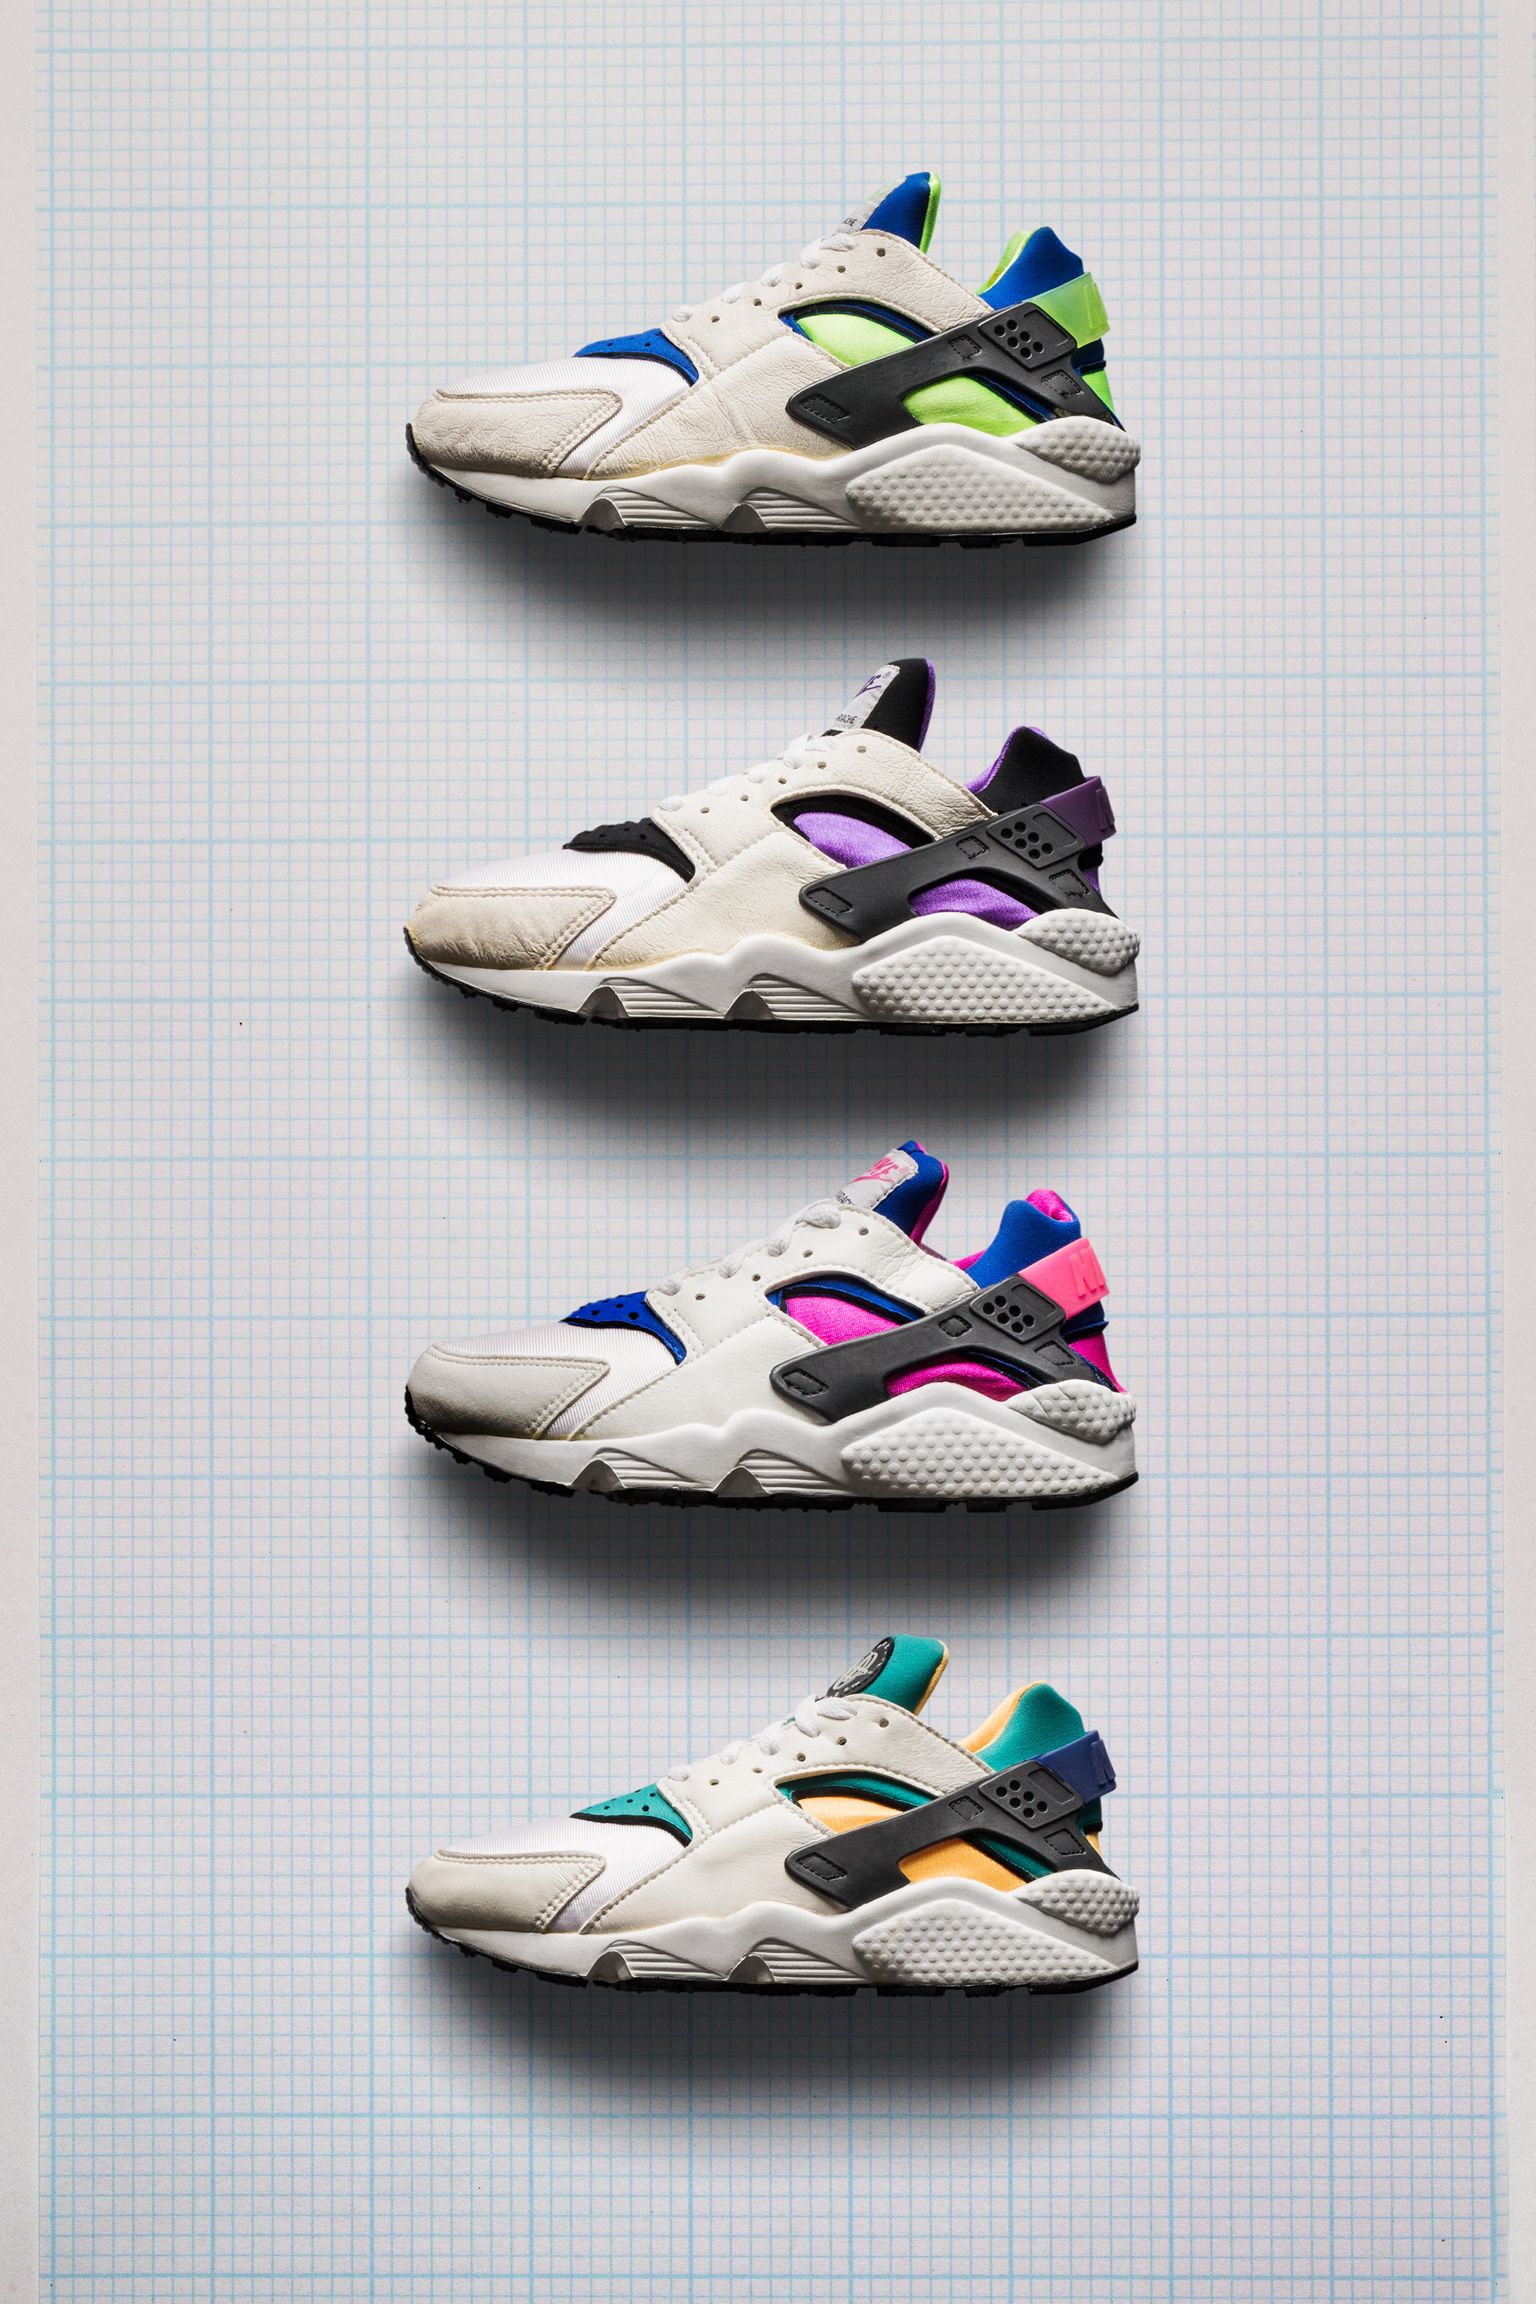 Behind The Design: Air Huarache. Nike SNKRS